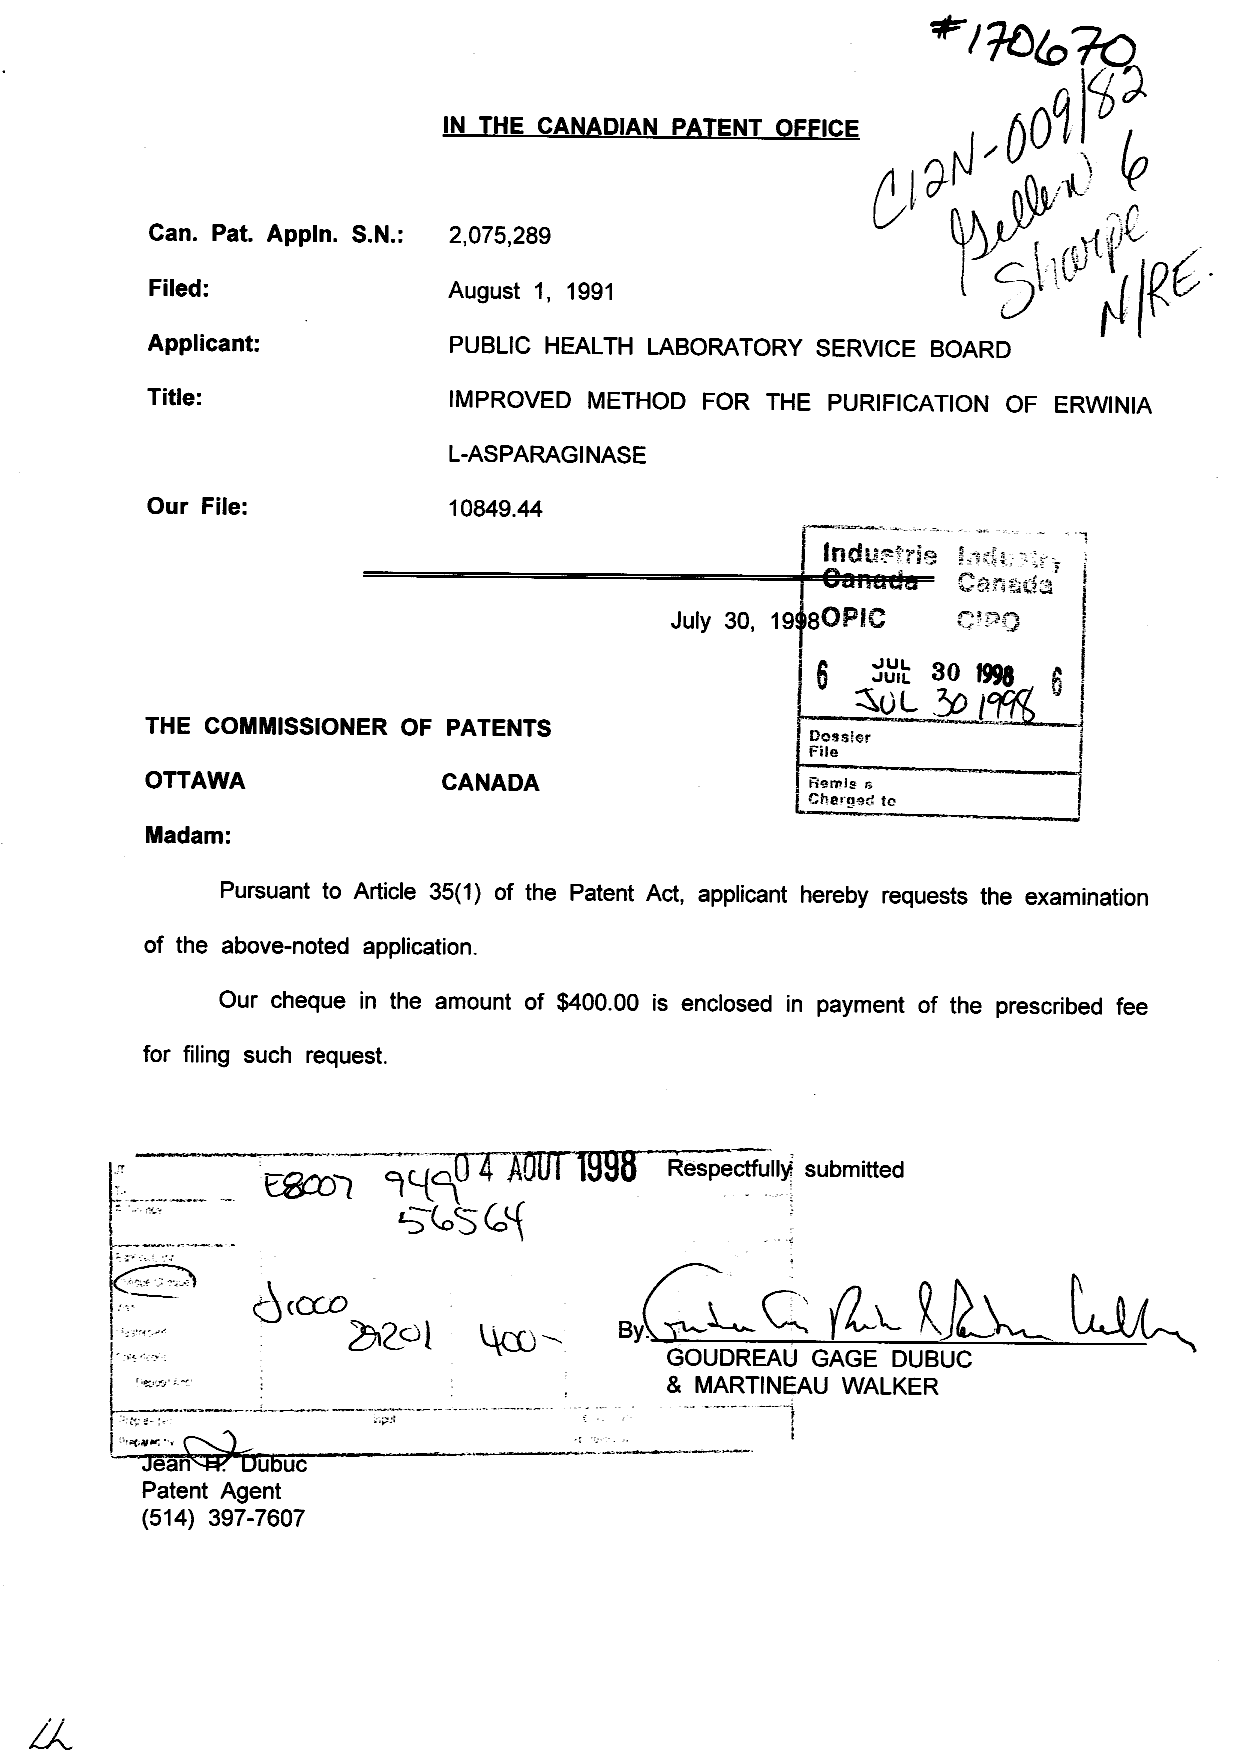 Document de brevet canadien 2075289. Poursuite-Amendment 19980730. Image 1 de 1